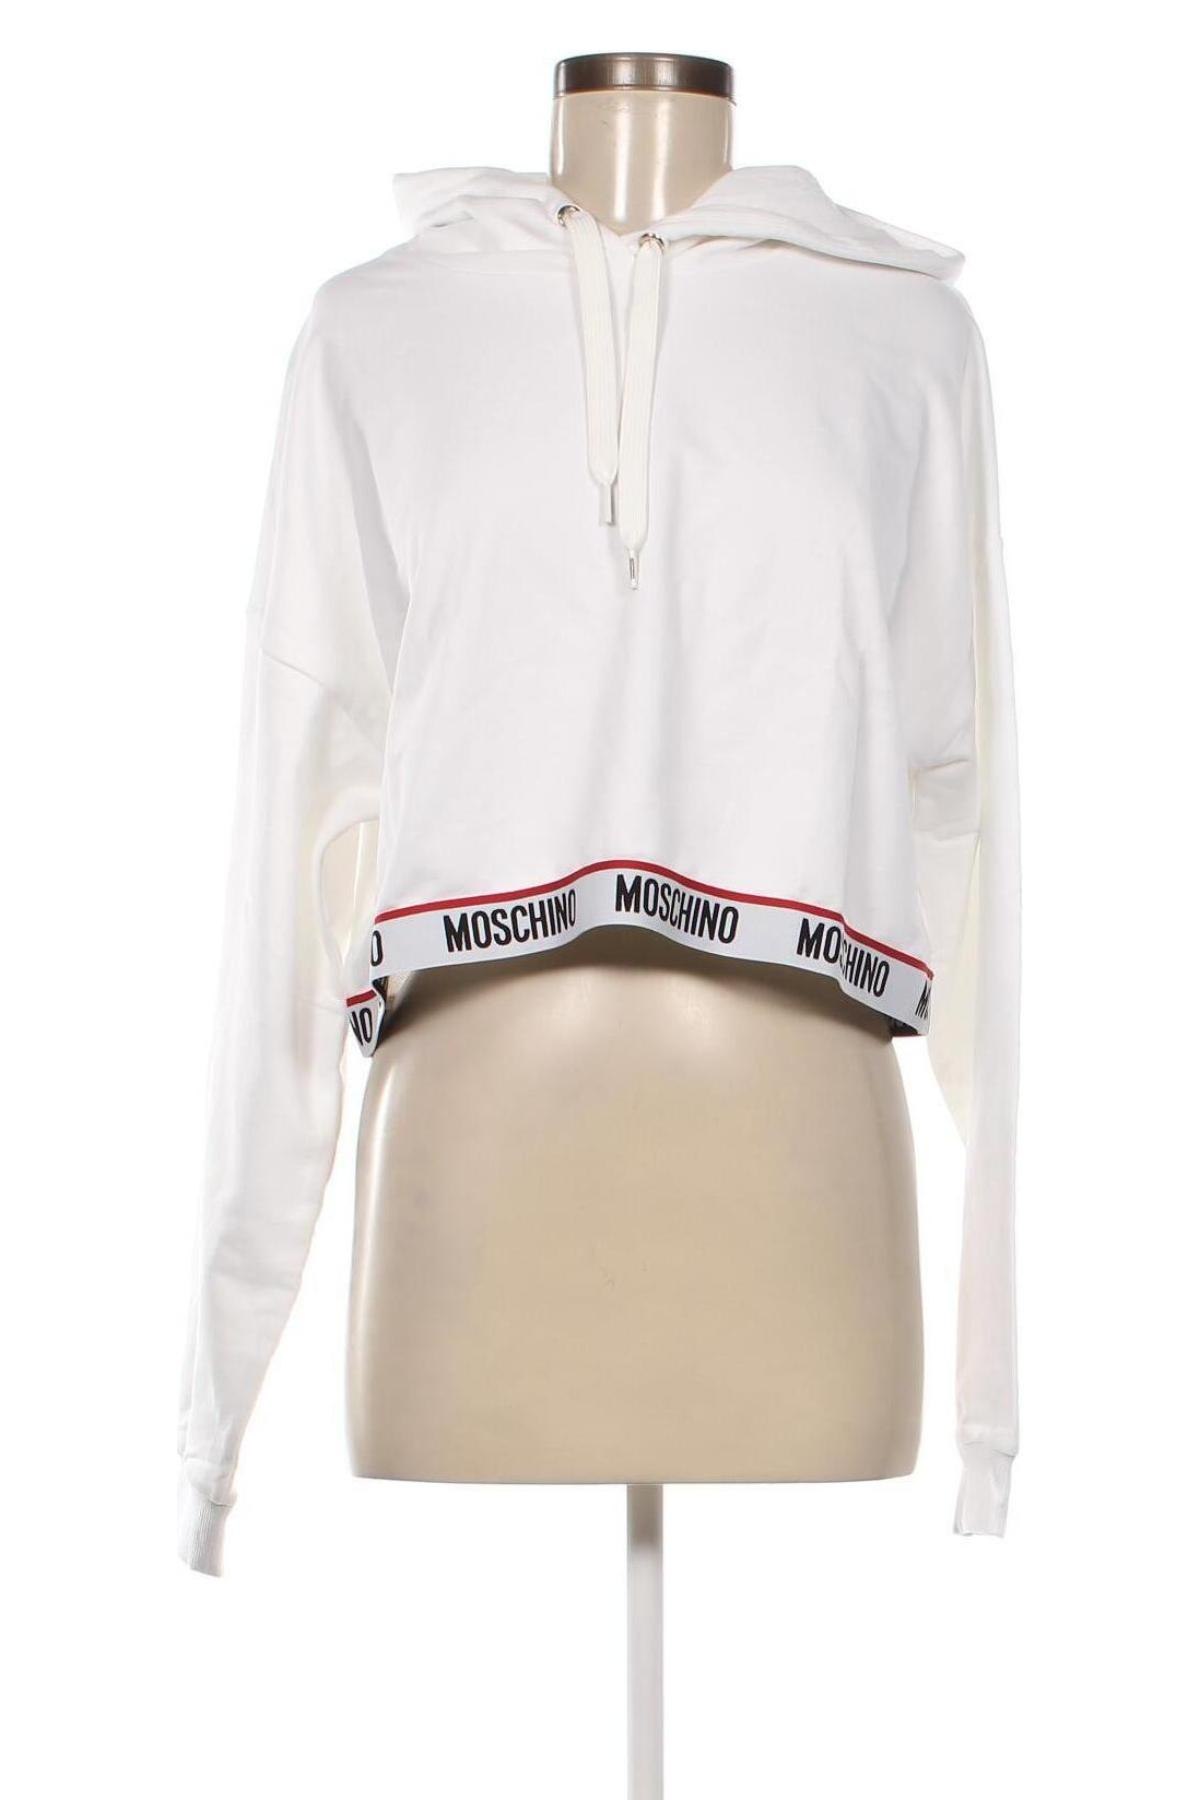 Πιτζάμες Moschino underwear, Μέγεθος L, Χρώμα Λευκό, Τιμή 100,70 €